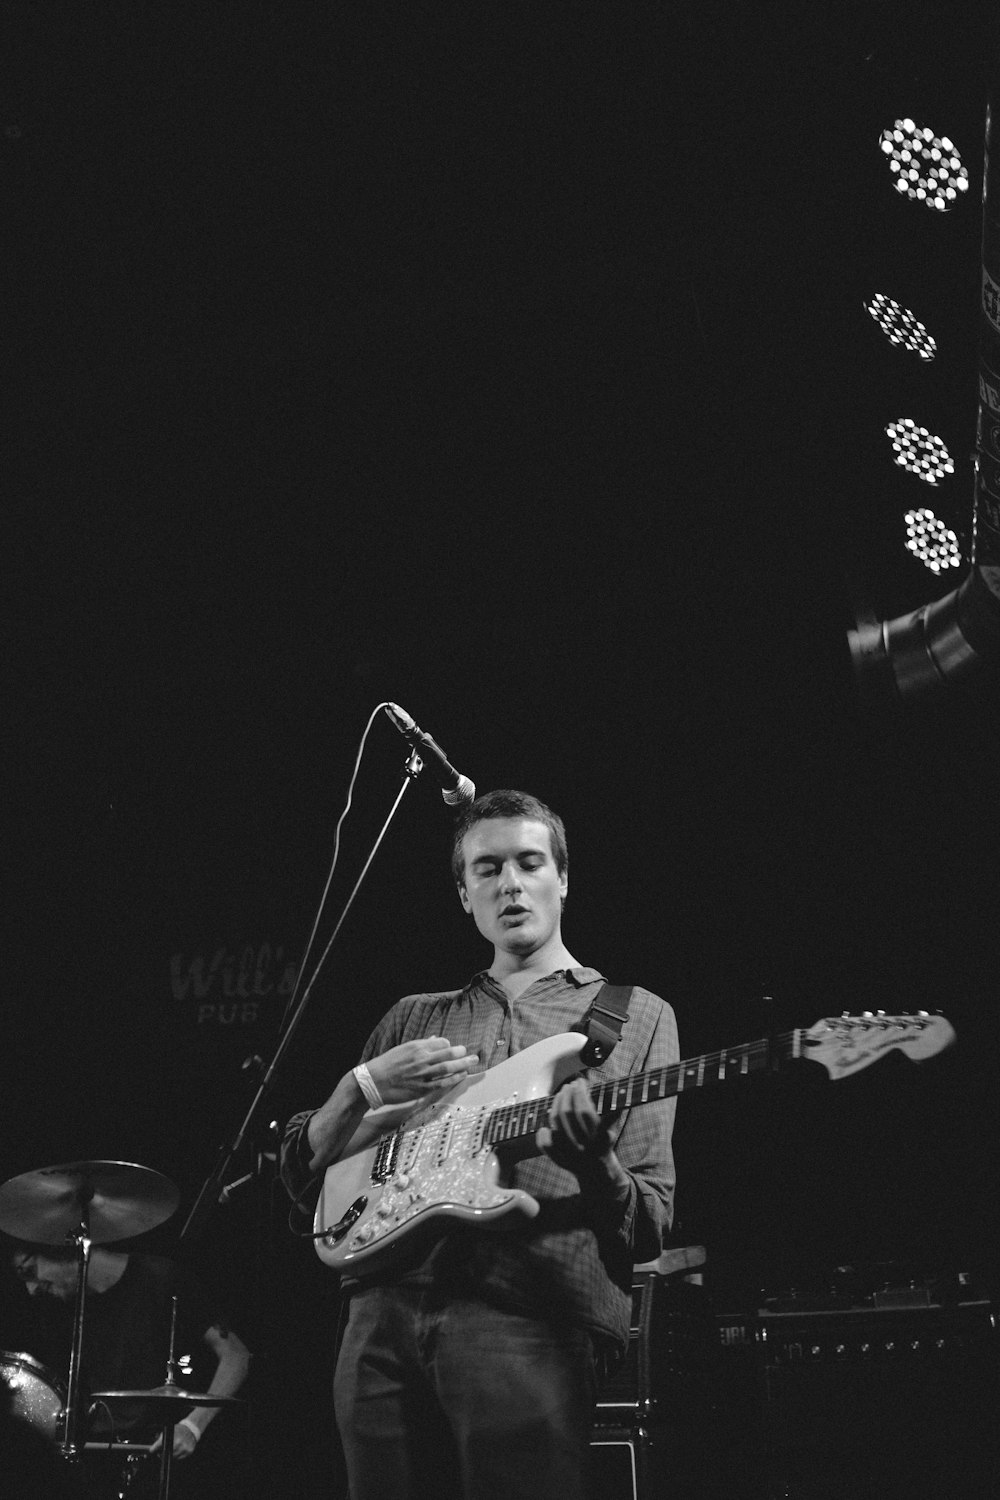 fotografia in scala di grigi di un uomo che suona la chitarra sul palco